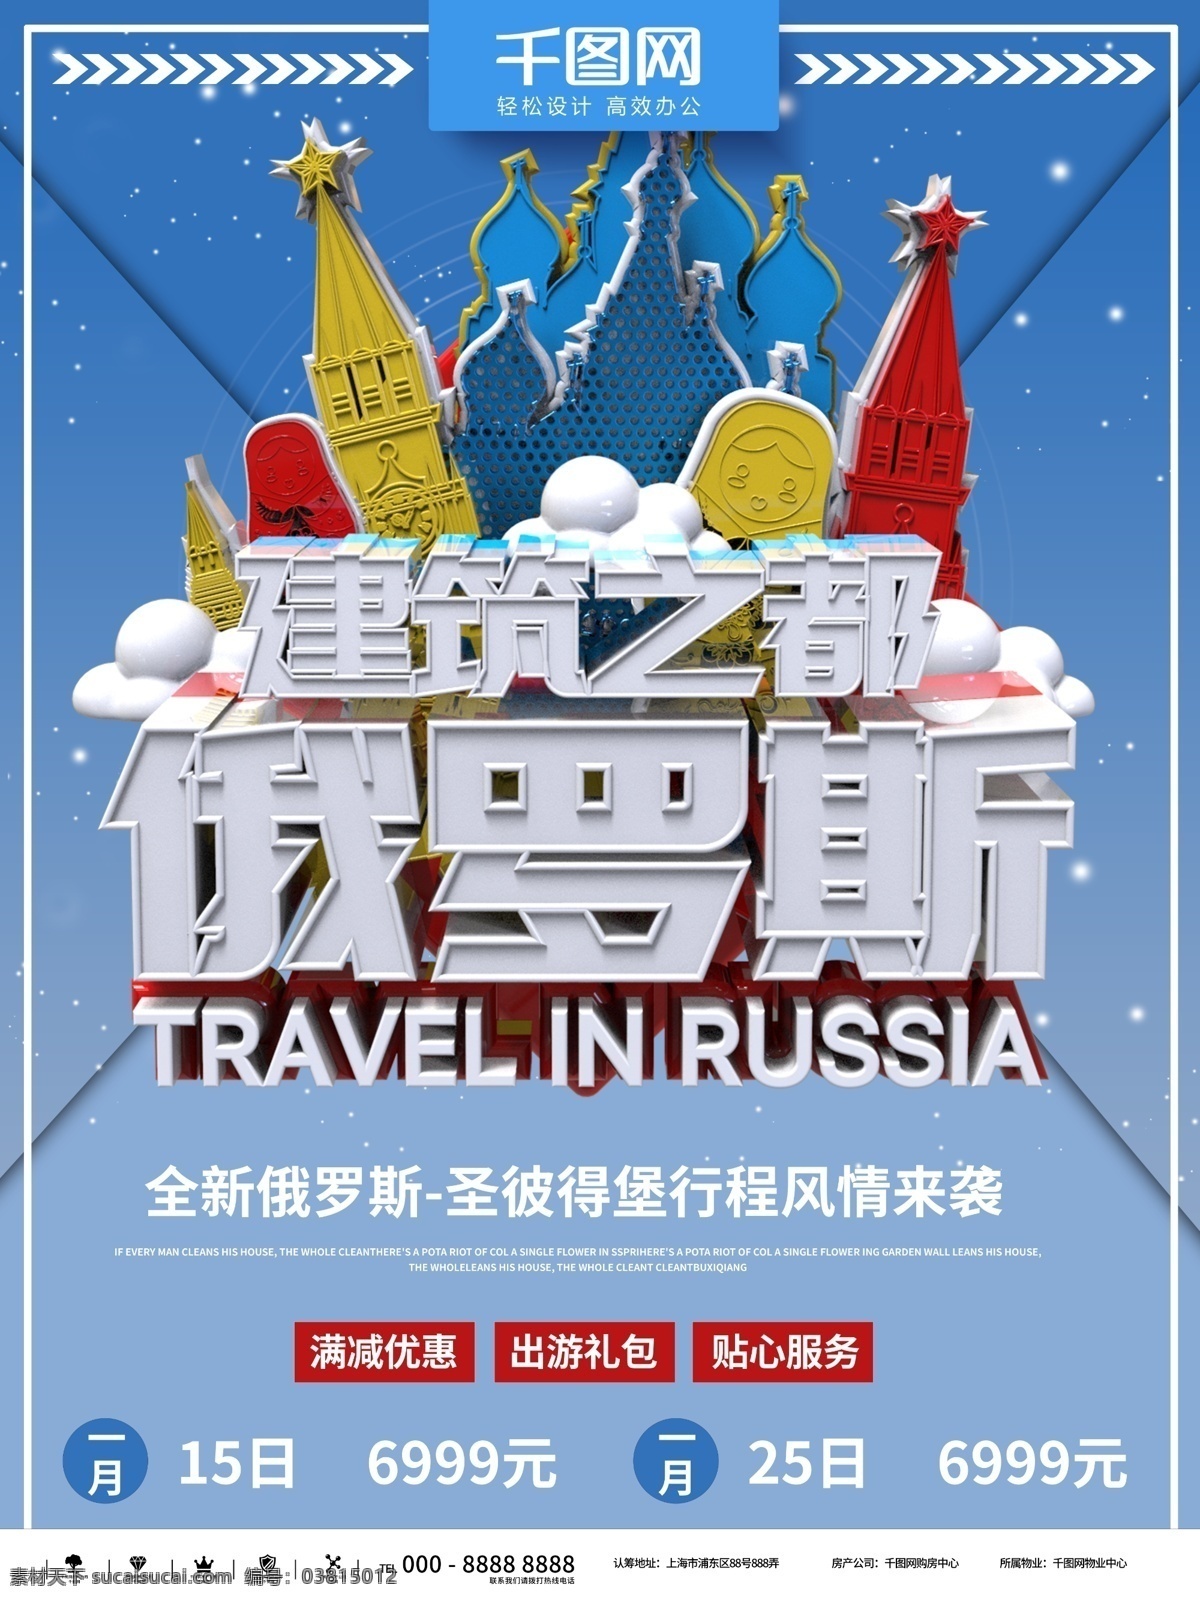 蓝色 简约 风情 俄罗斯 旅游 商业 海报 时尚 宣传 促销 立体 出游 出境 国家 游玩 旅行社 展示 讲座 优惠 活动